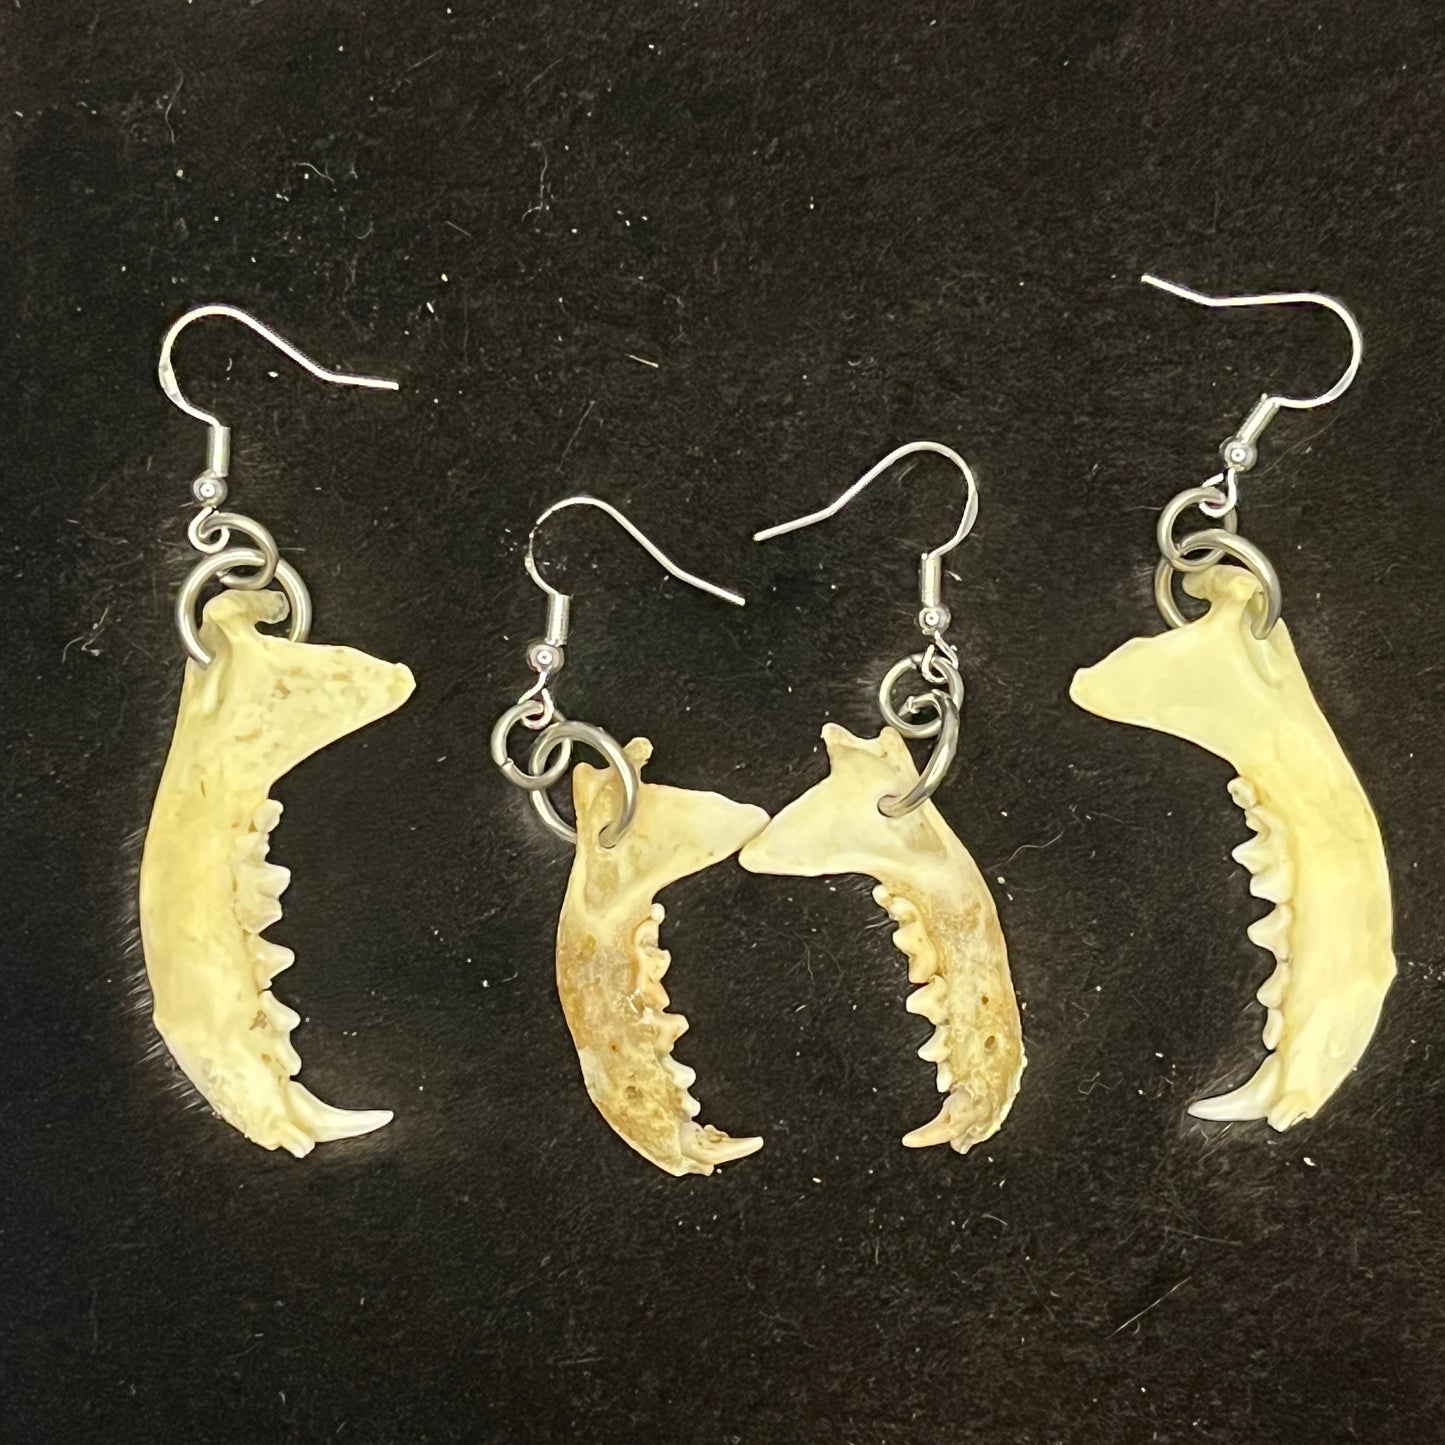 Earrings - Small mammal jawbones